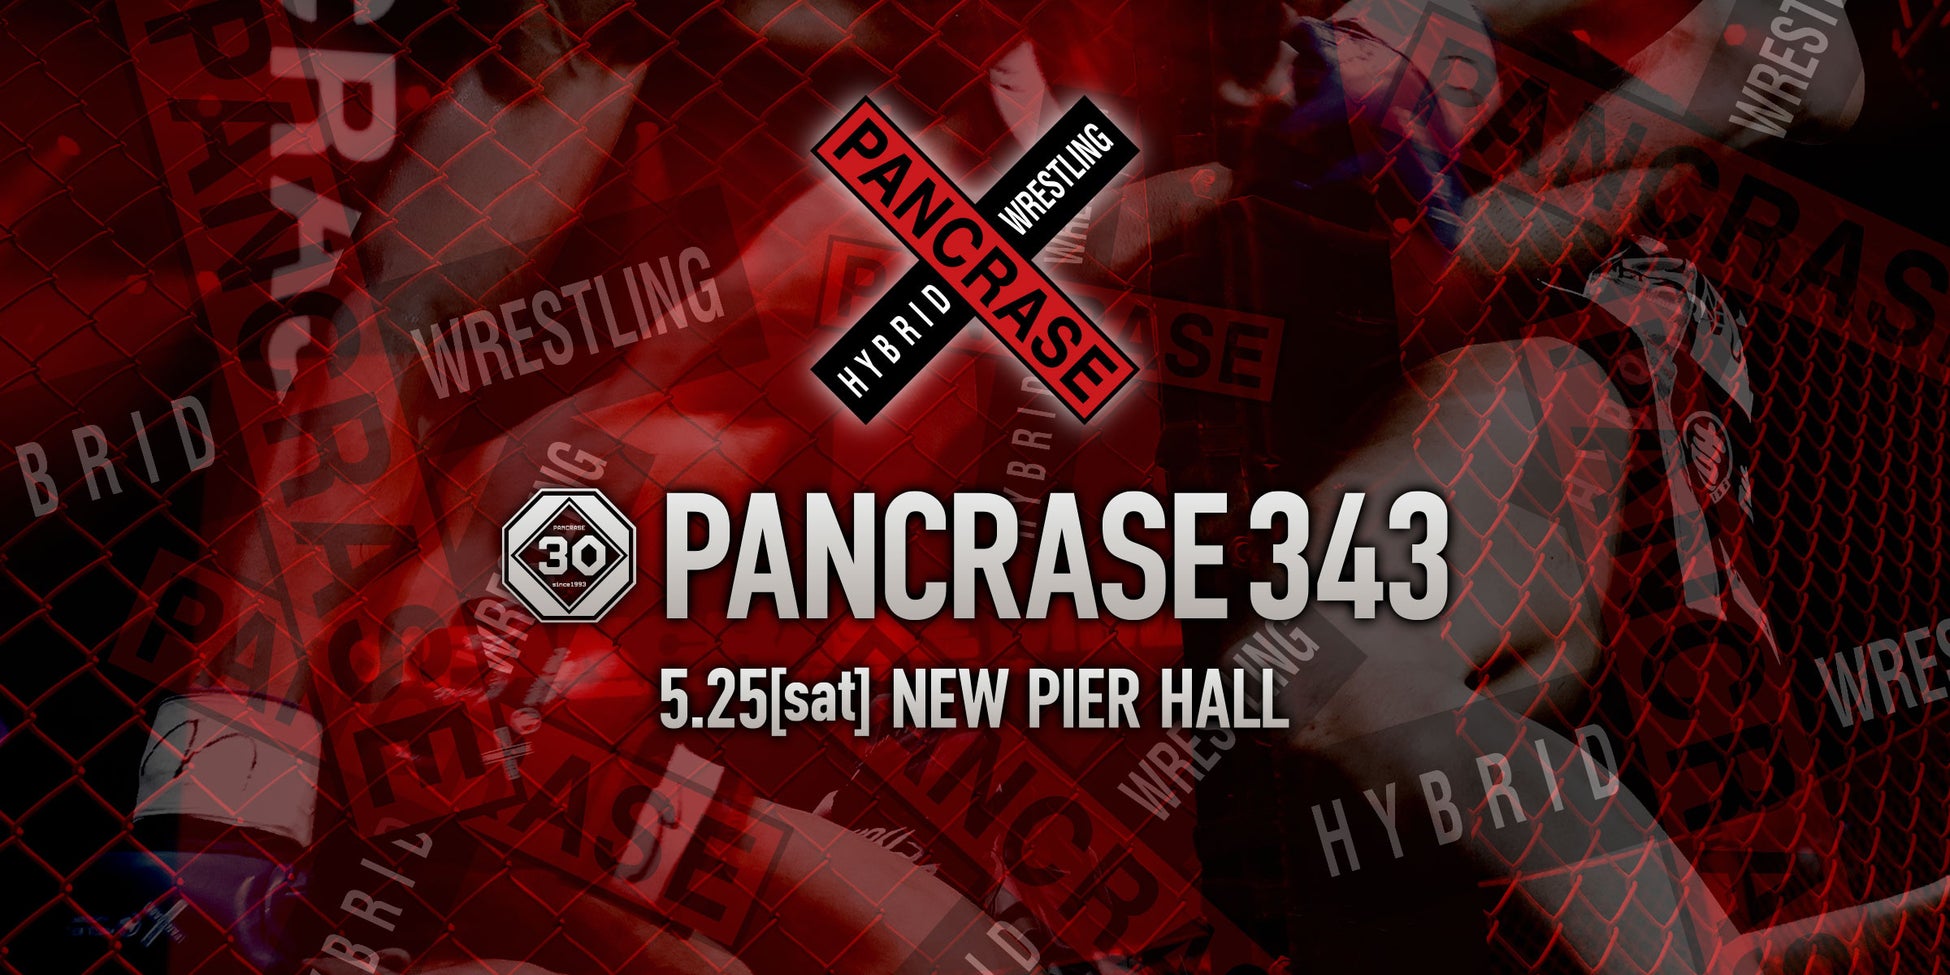 「完全実力主義」を掲げる総合格闘技団体 PANCRASE 343 大会に華を添えるパンクラスガールが決定